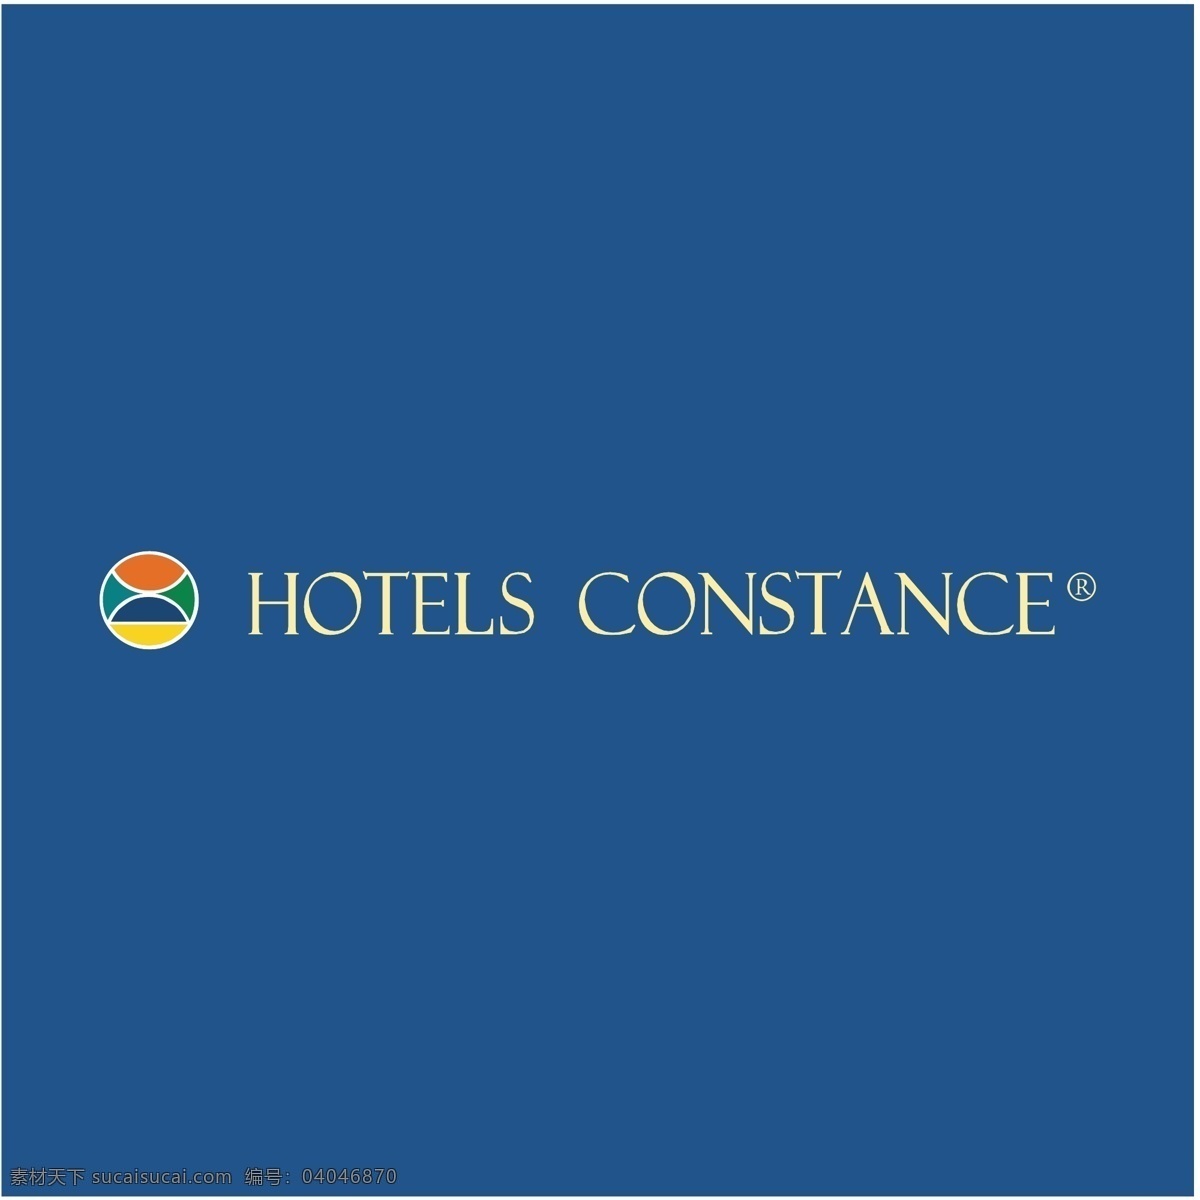 酒店康斯坦斯 酒店 康斯坦斯 矢量 图形 免费 艺术 图像 宾馆的图片 宾馆 免费酒店 建筑家居